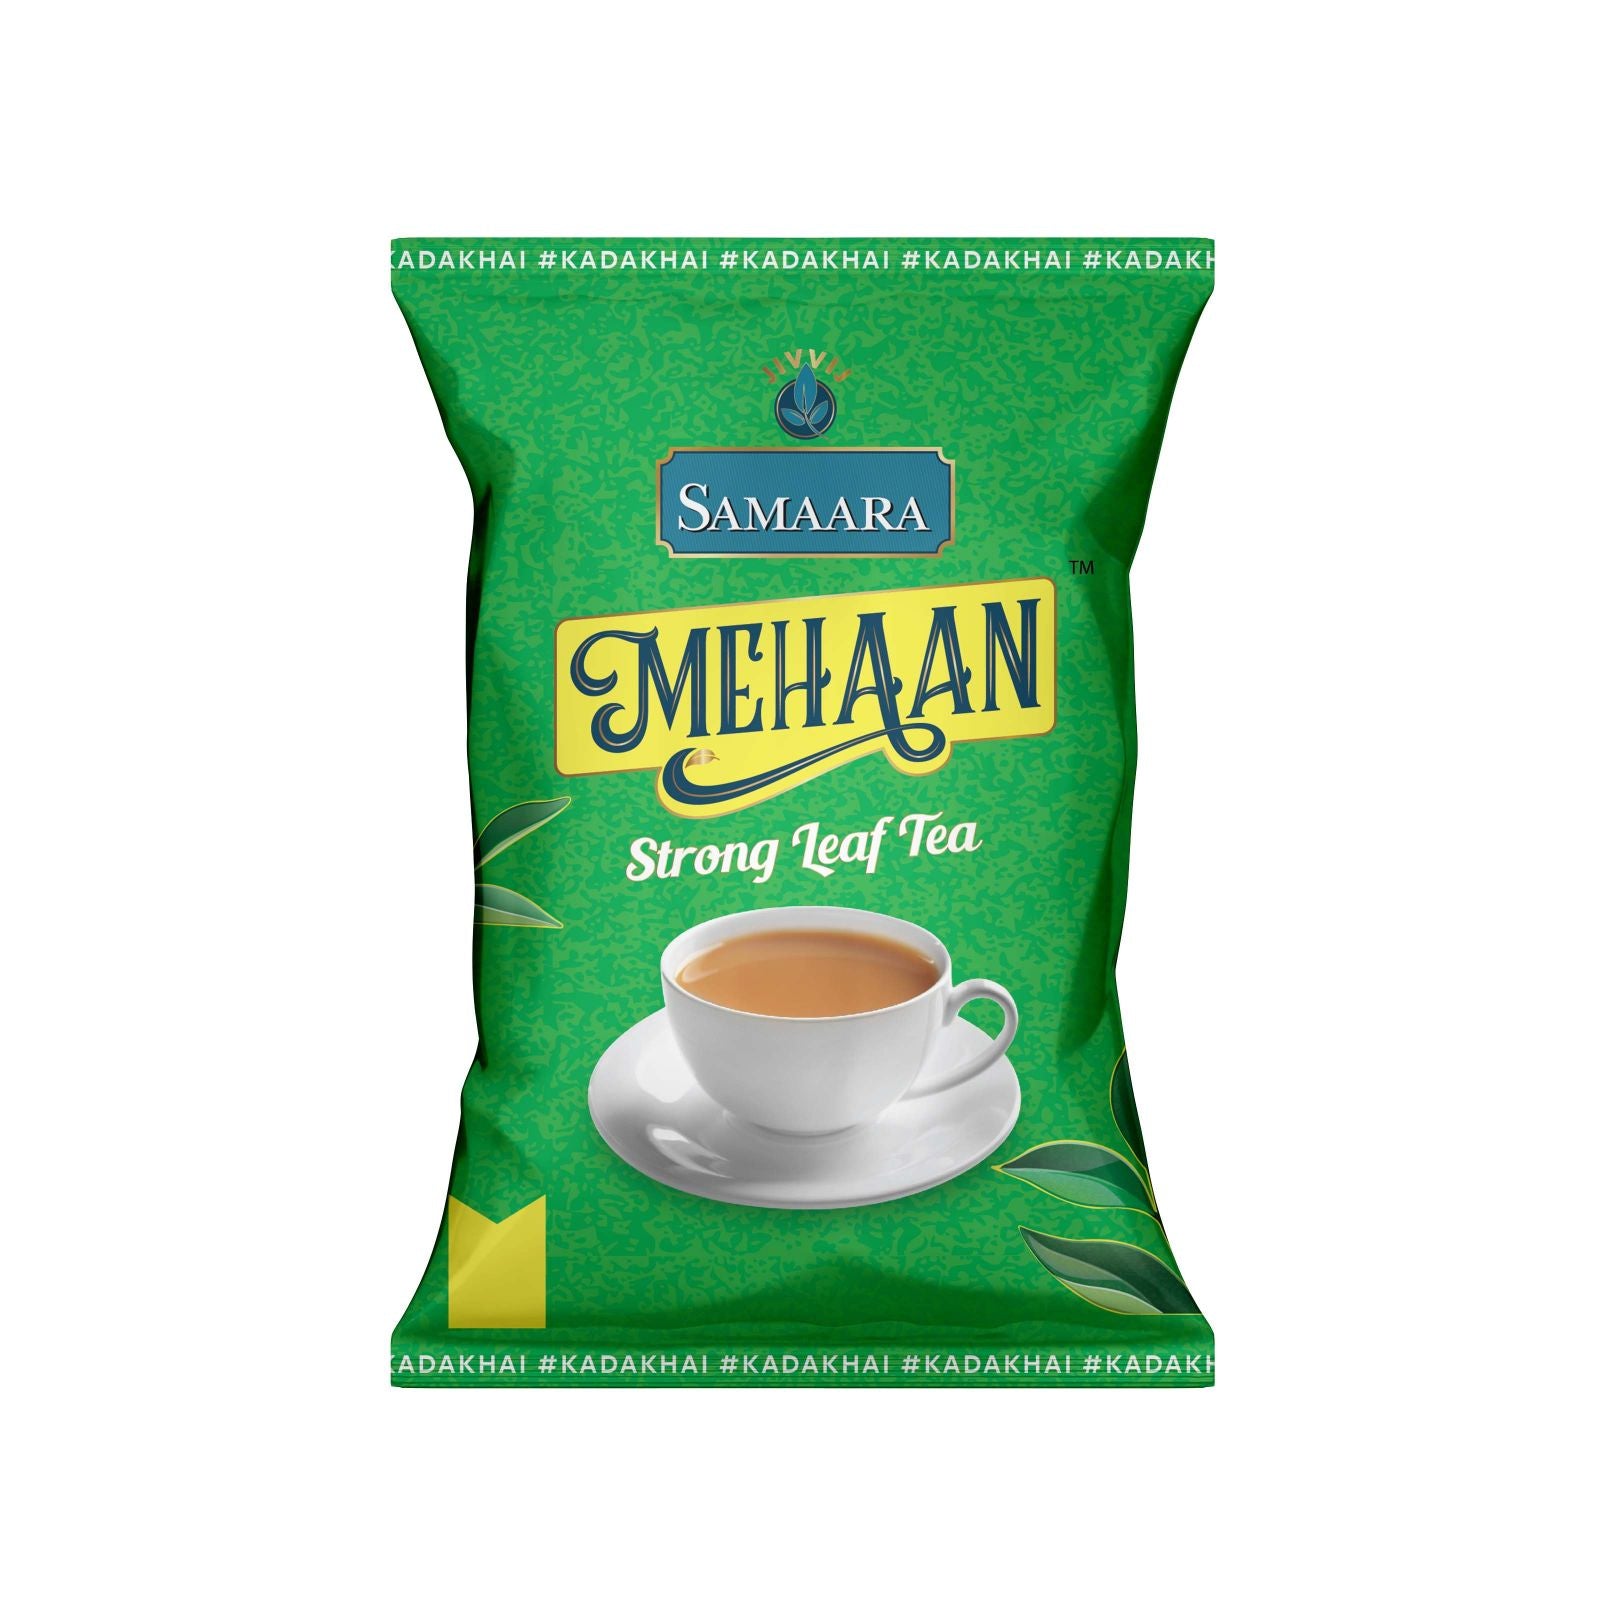 JIVVIJ SAMAARA Mehaan Leaf Tea | Natural Assam Blend